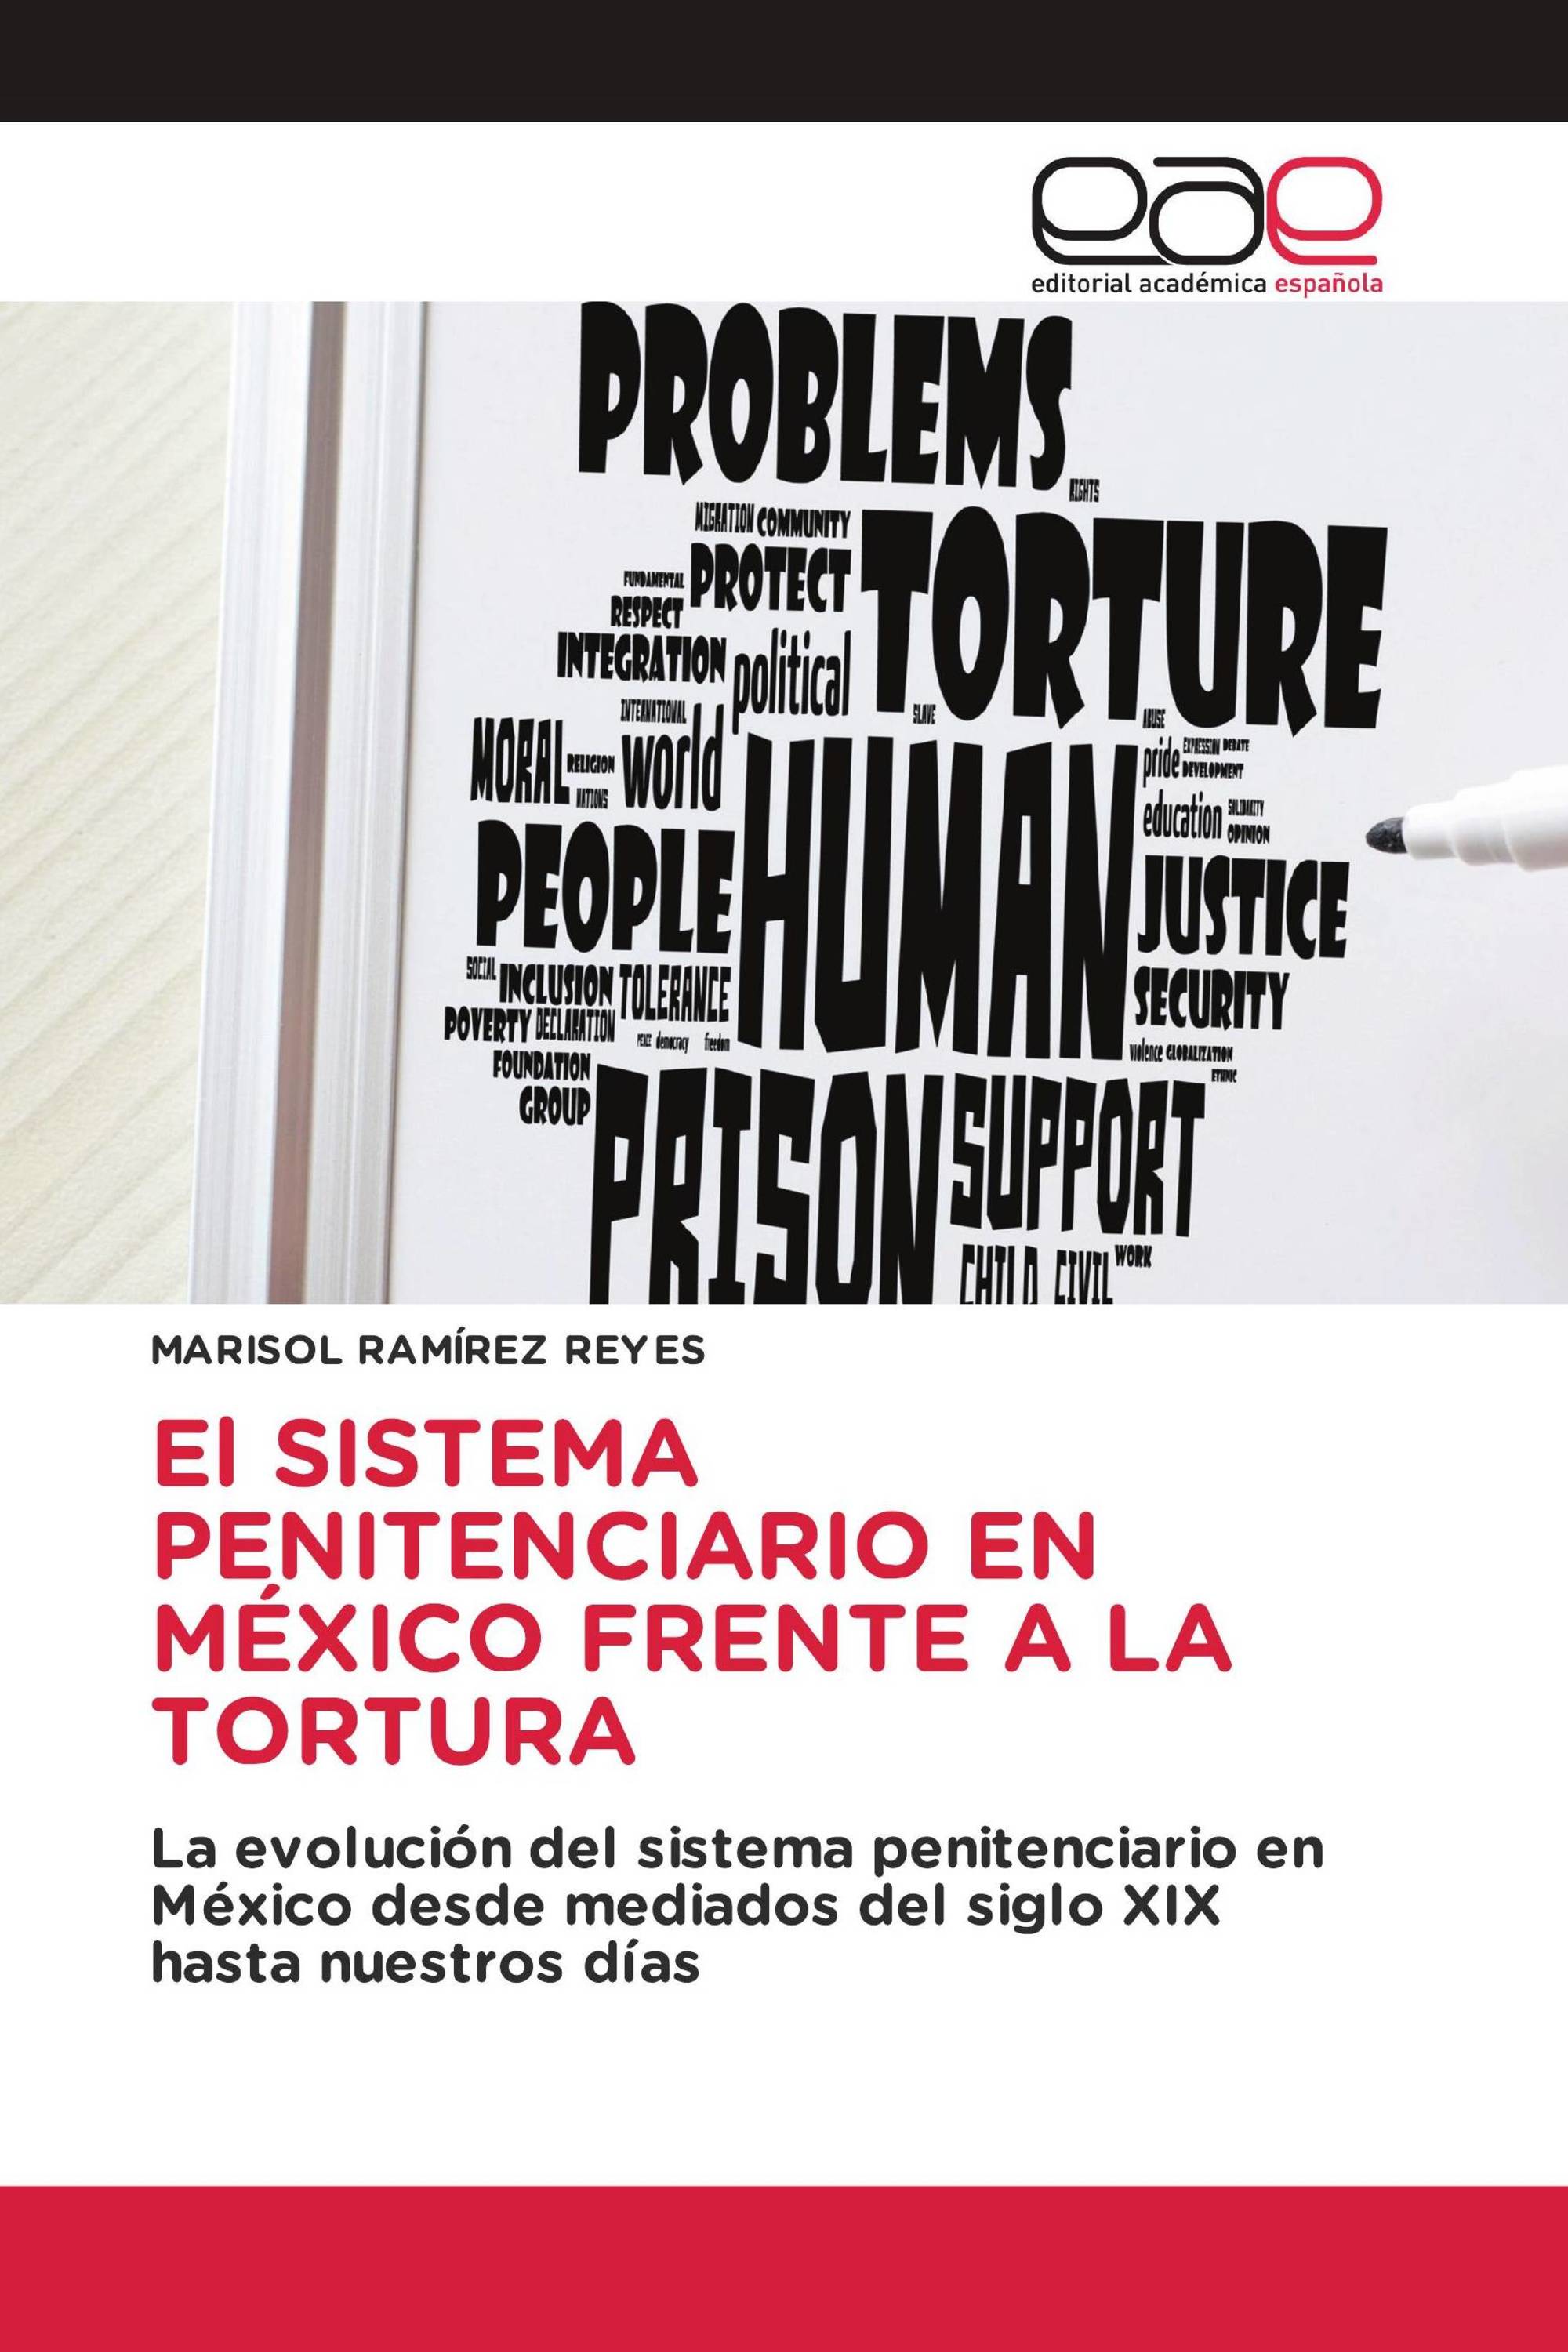 El SISTEMA PENITENCIARIO EN MÉXICO FRENTE A LA TORTURA